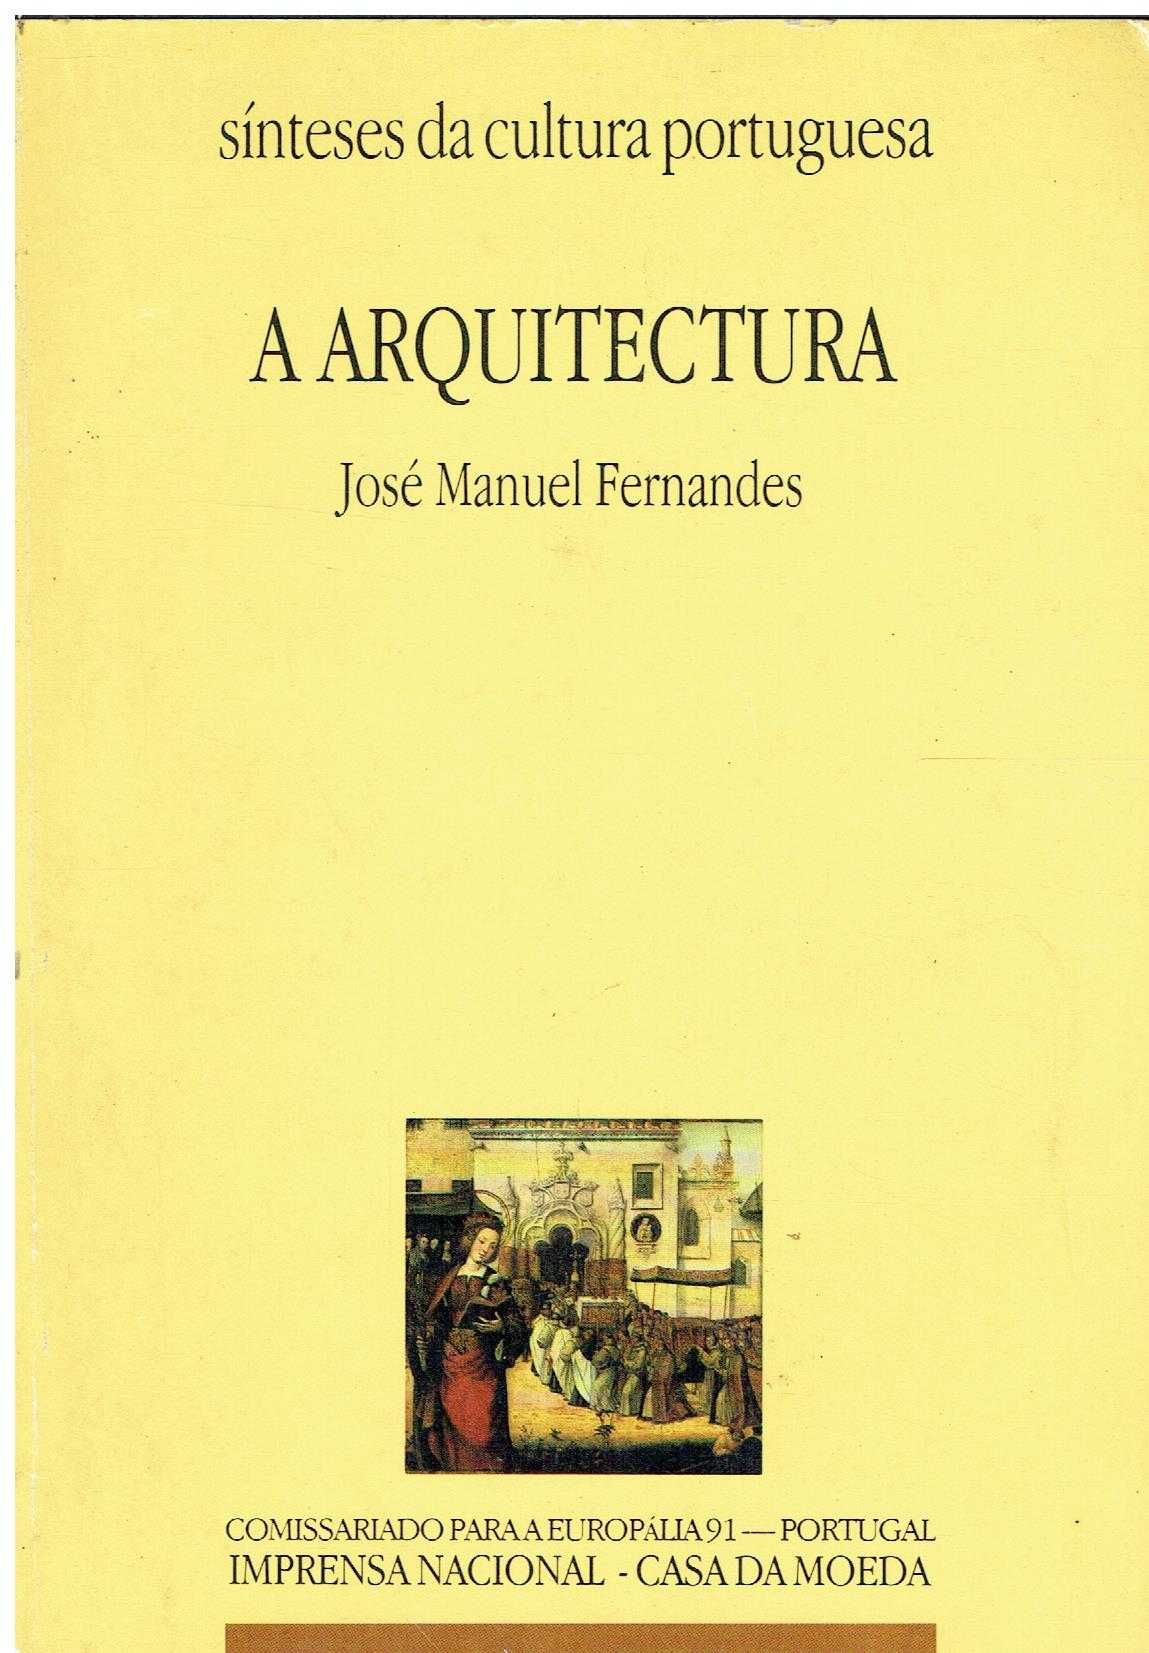 7441

A Arquitectura
de José Manuel Fernandes